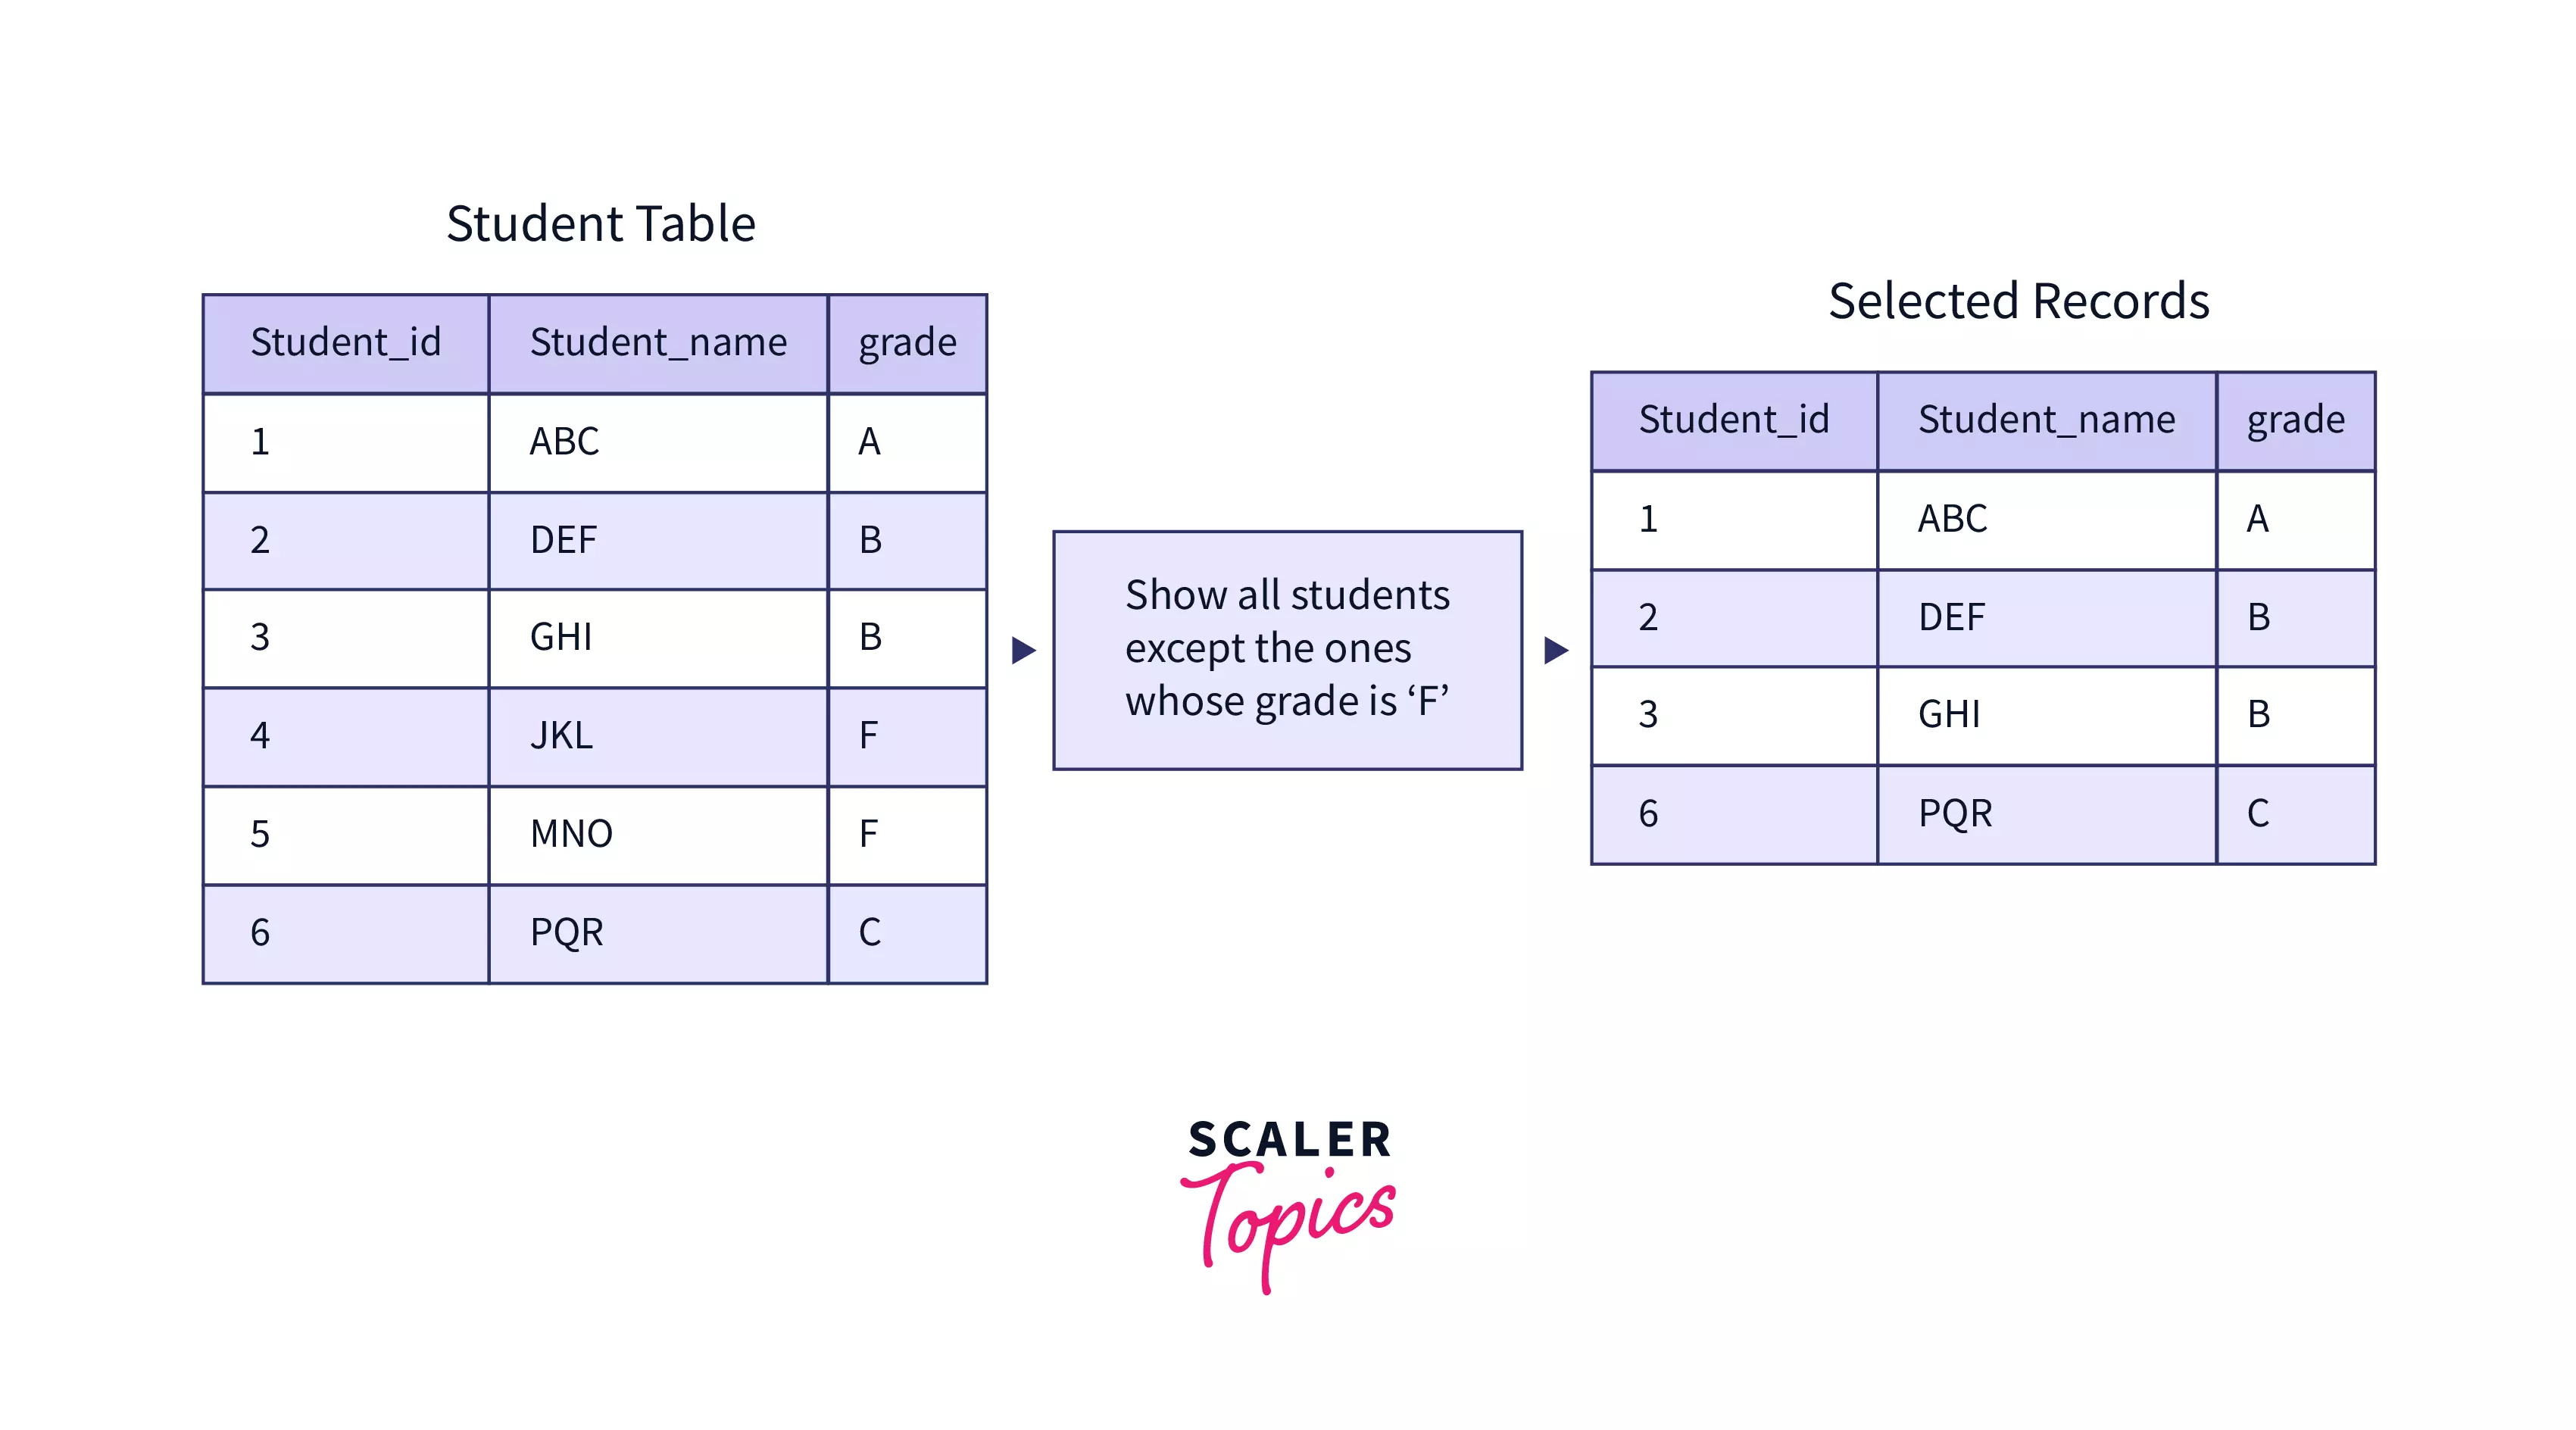 Not in SQL Scaler Topics